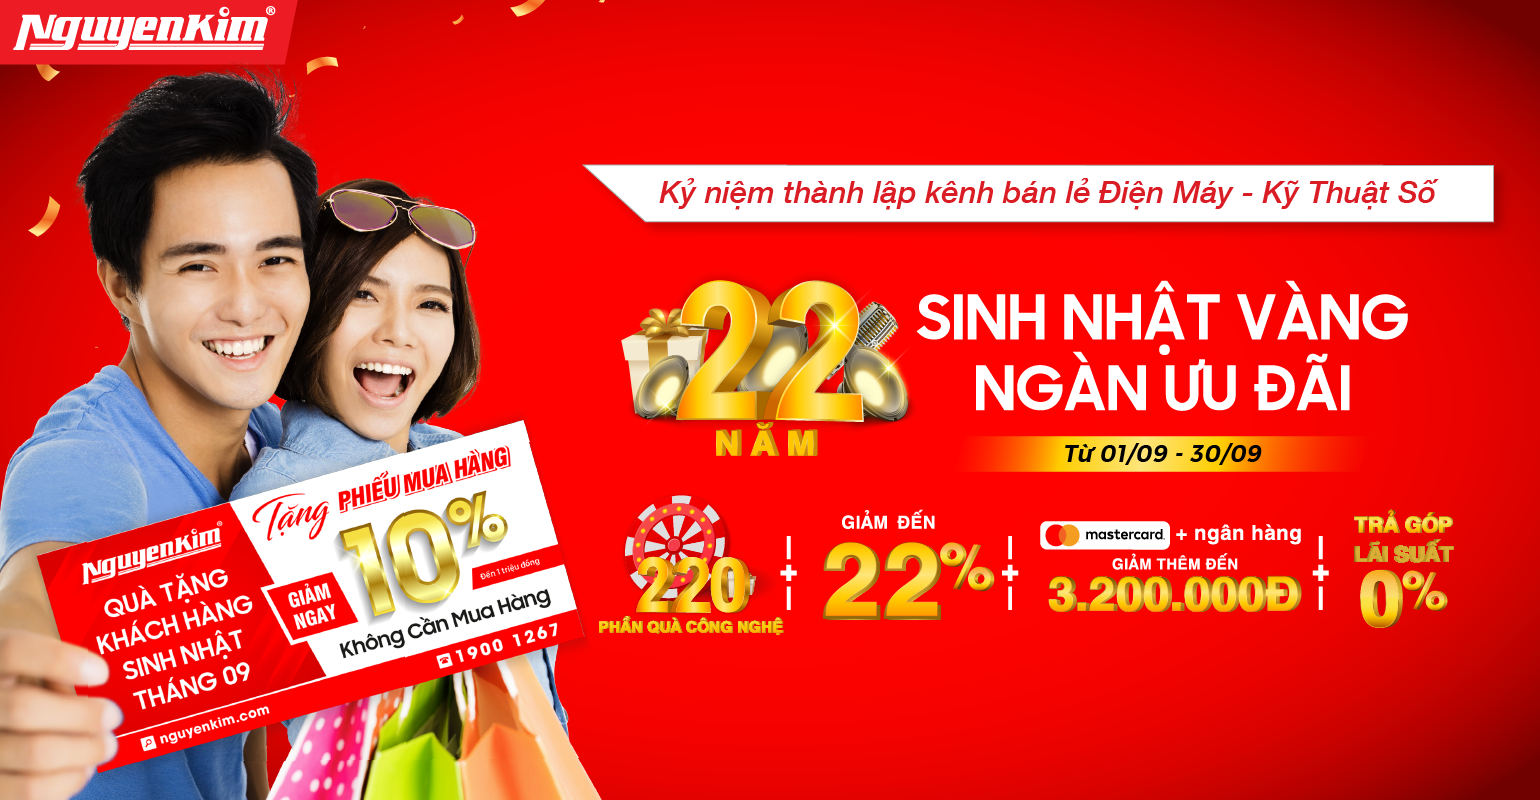 Mừng sinh nhật 21 tuổi Nguyễn Kim tưng bừng khuyến mãi lên đến 21 tỷ  Nguyễn  Kim Blog